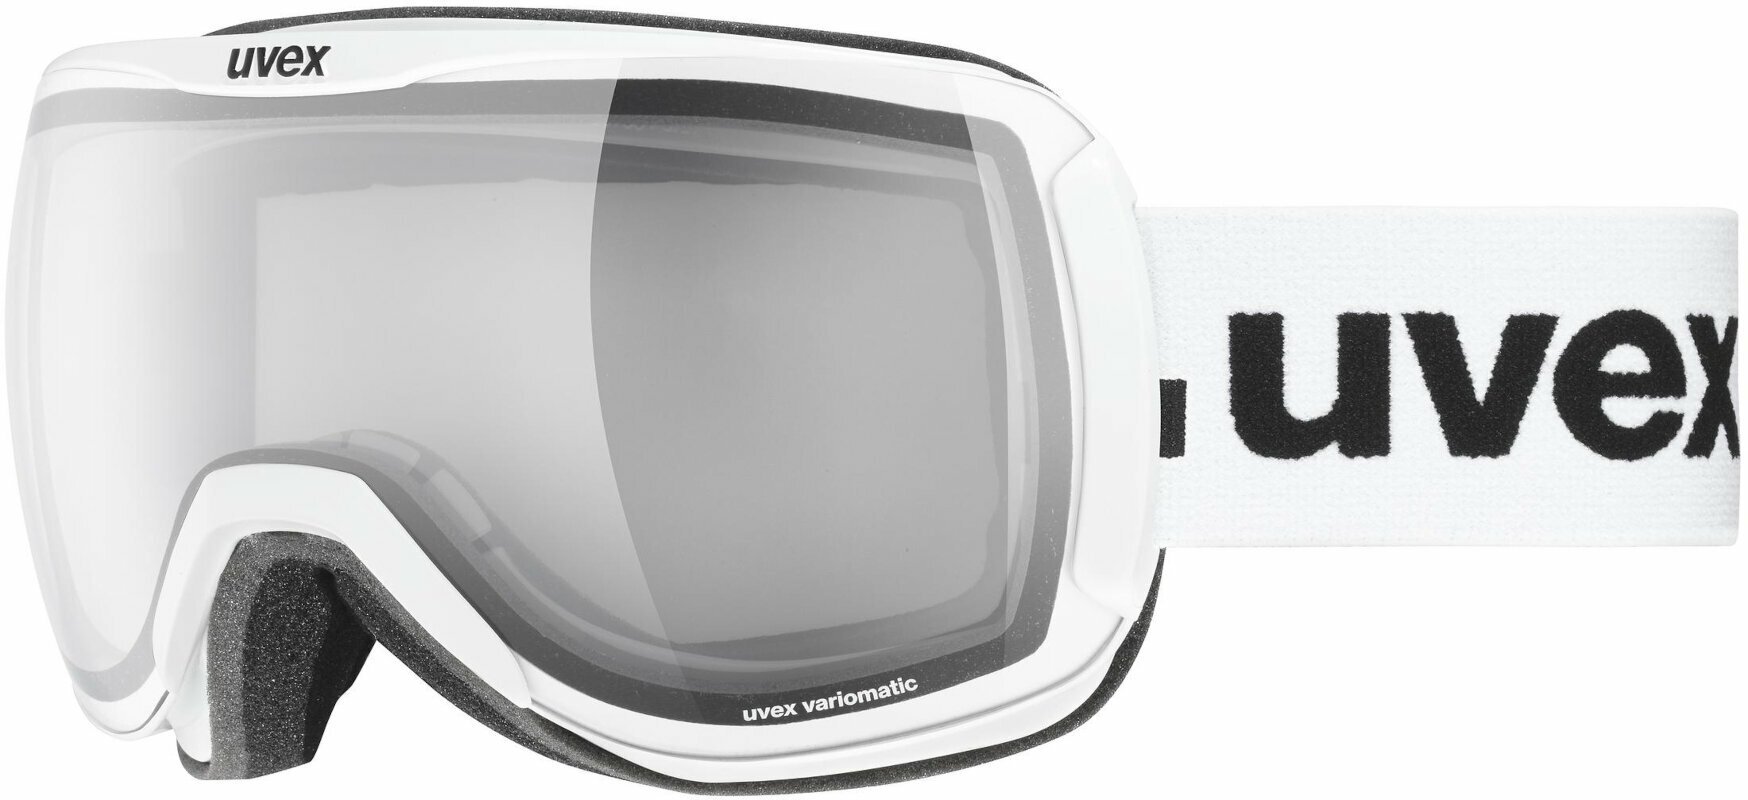 Ski Goggles UVEX Downhill 2100 VPX White/Variomatic Polavision Ski Goggles